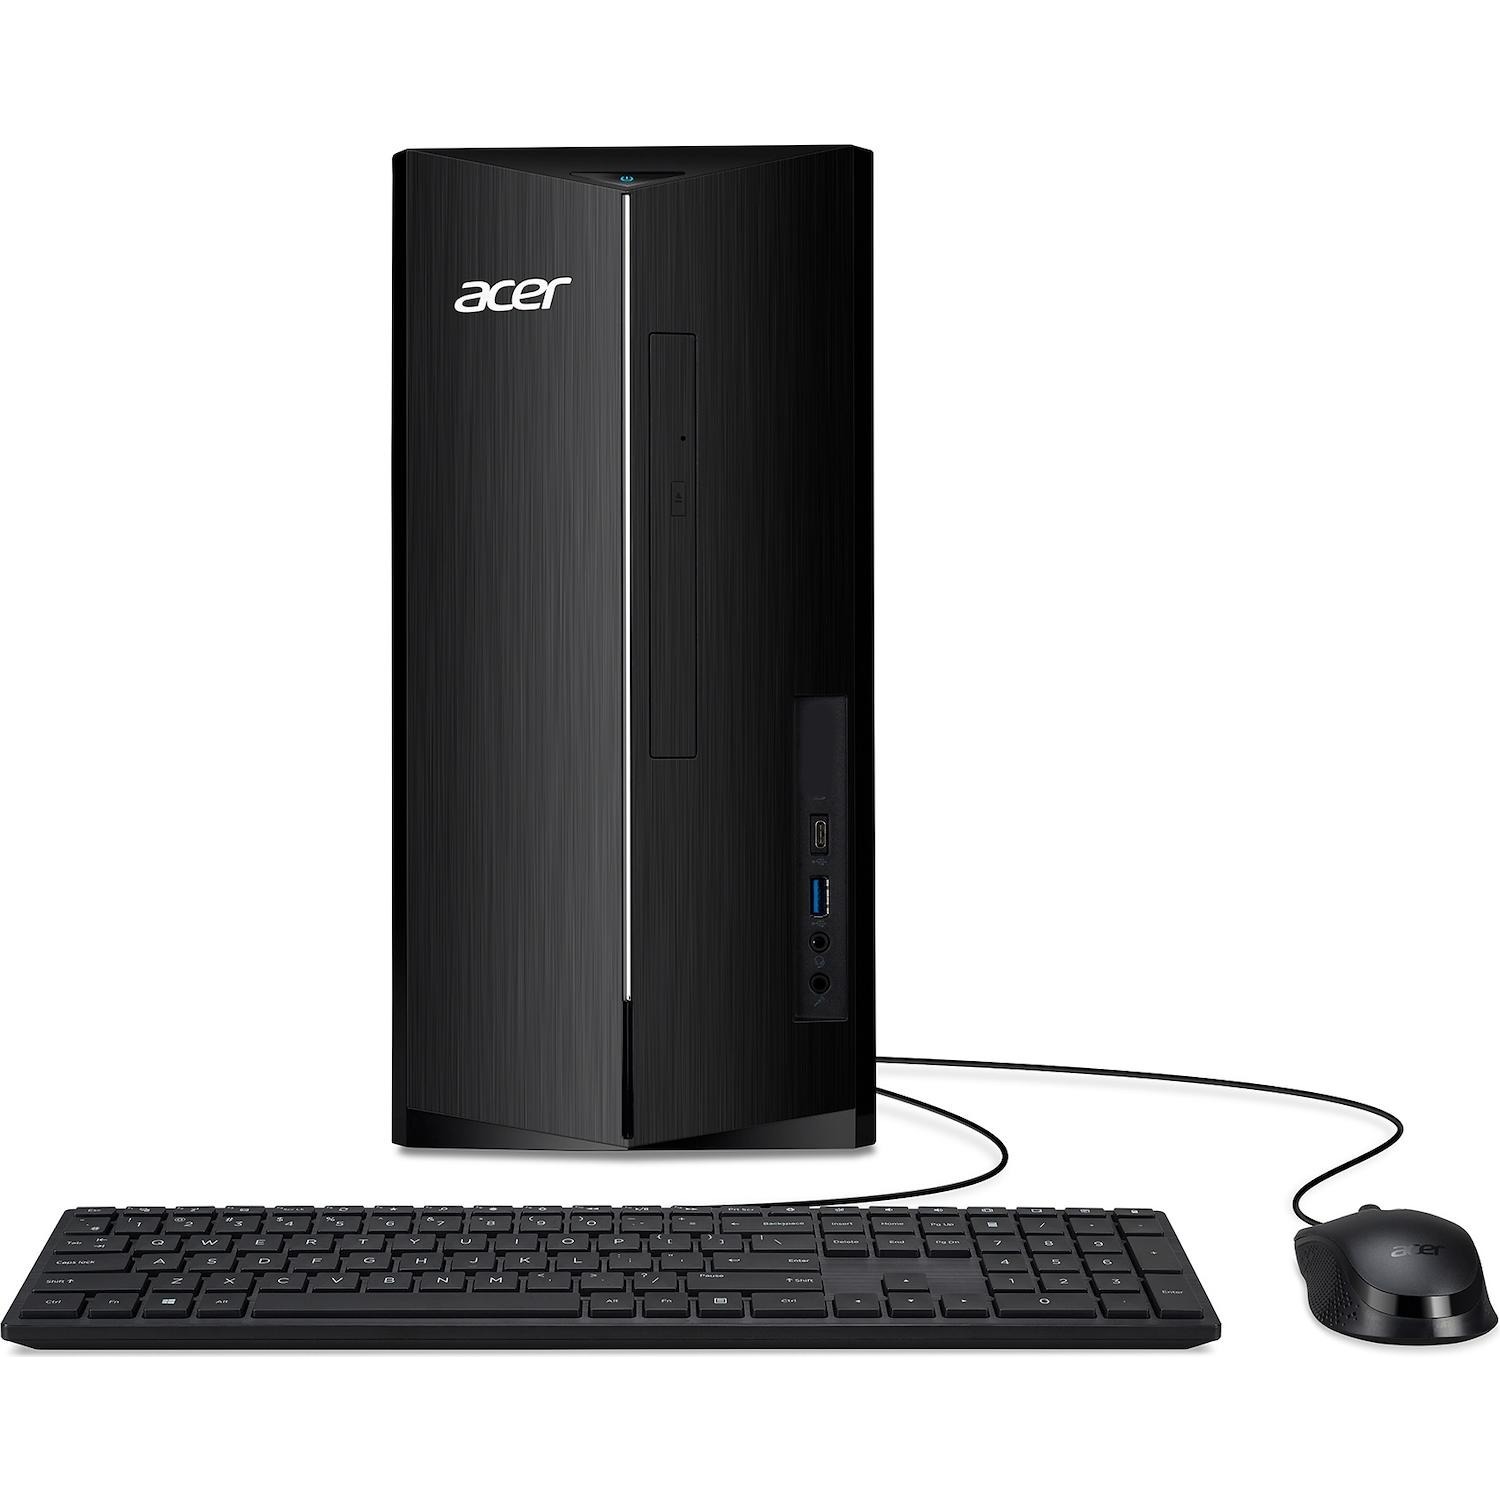 Immagine per Computer Acer XC-1760 nero da DIMOStore